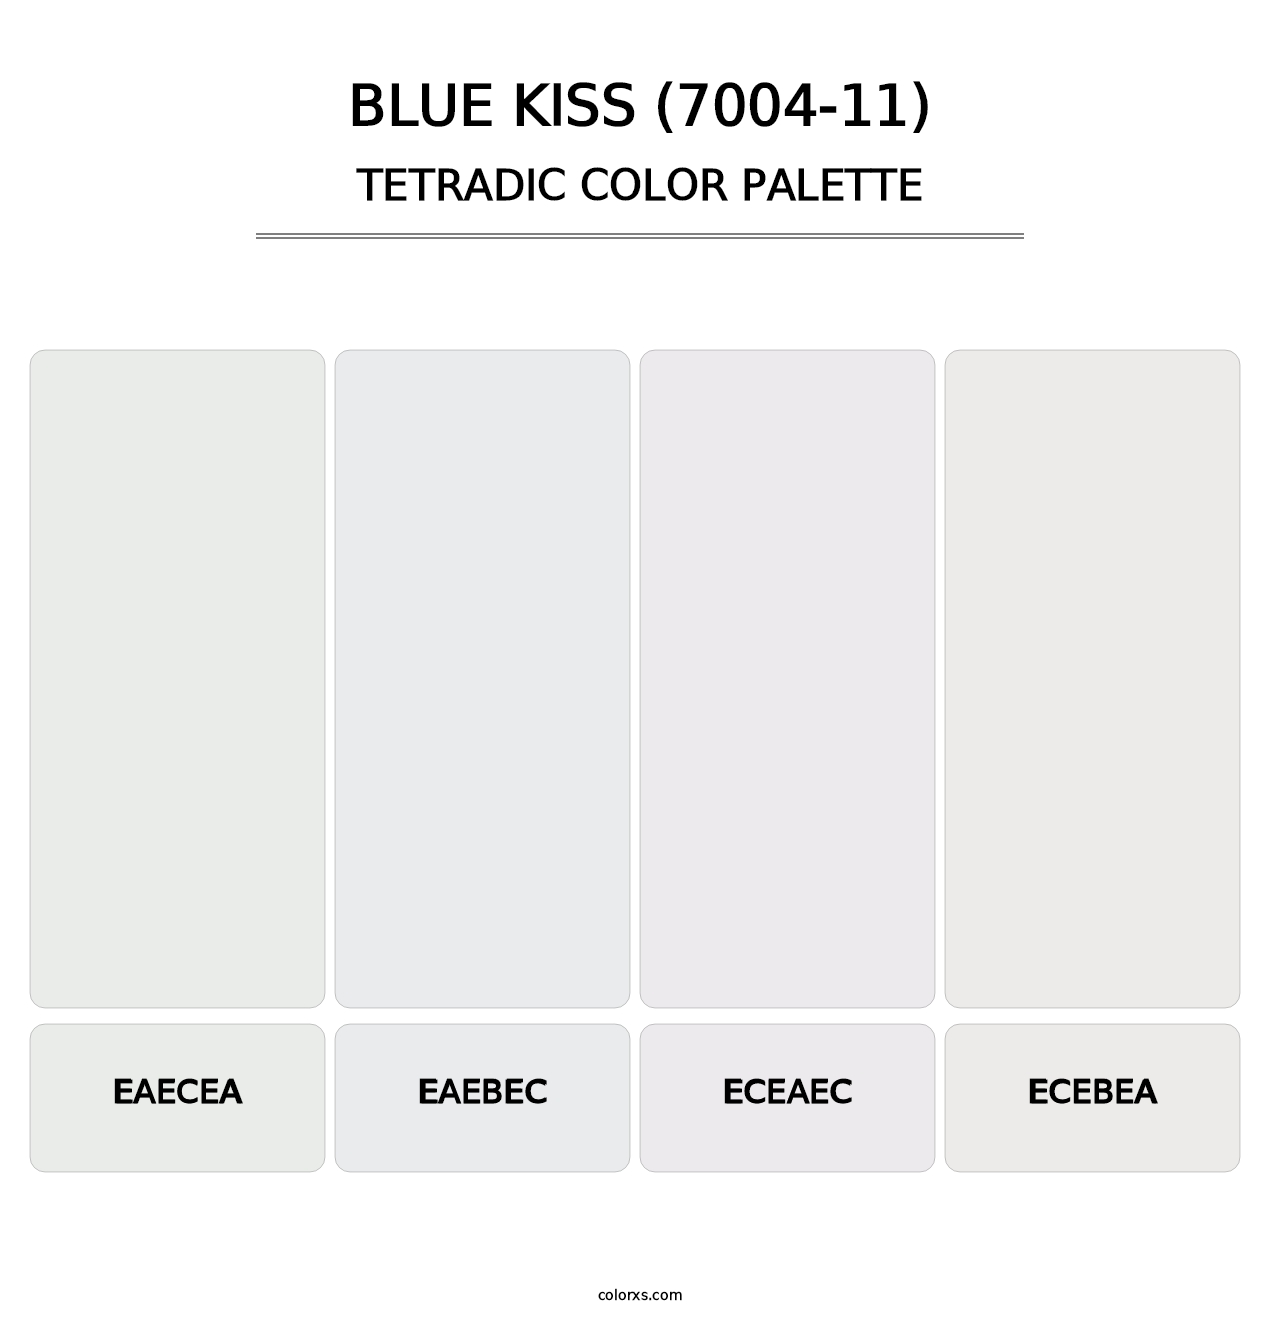 Blue Kiss (7004-11) - Tetradic Color Palette